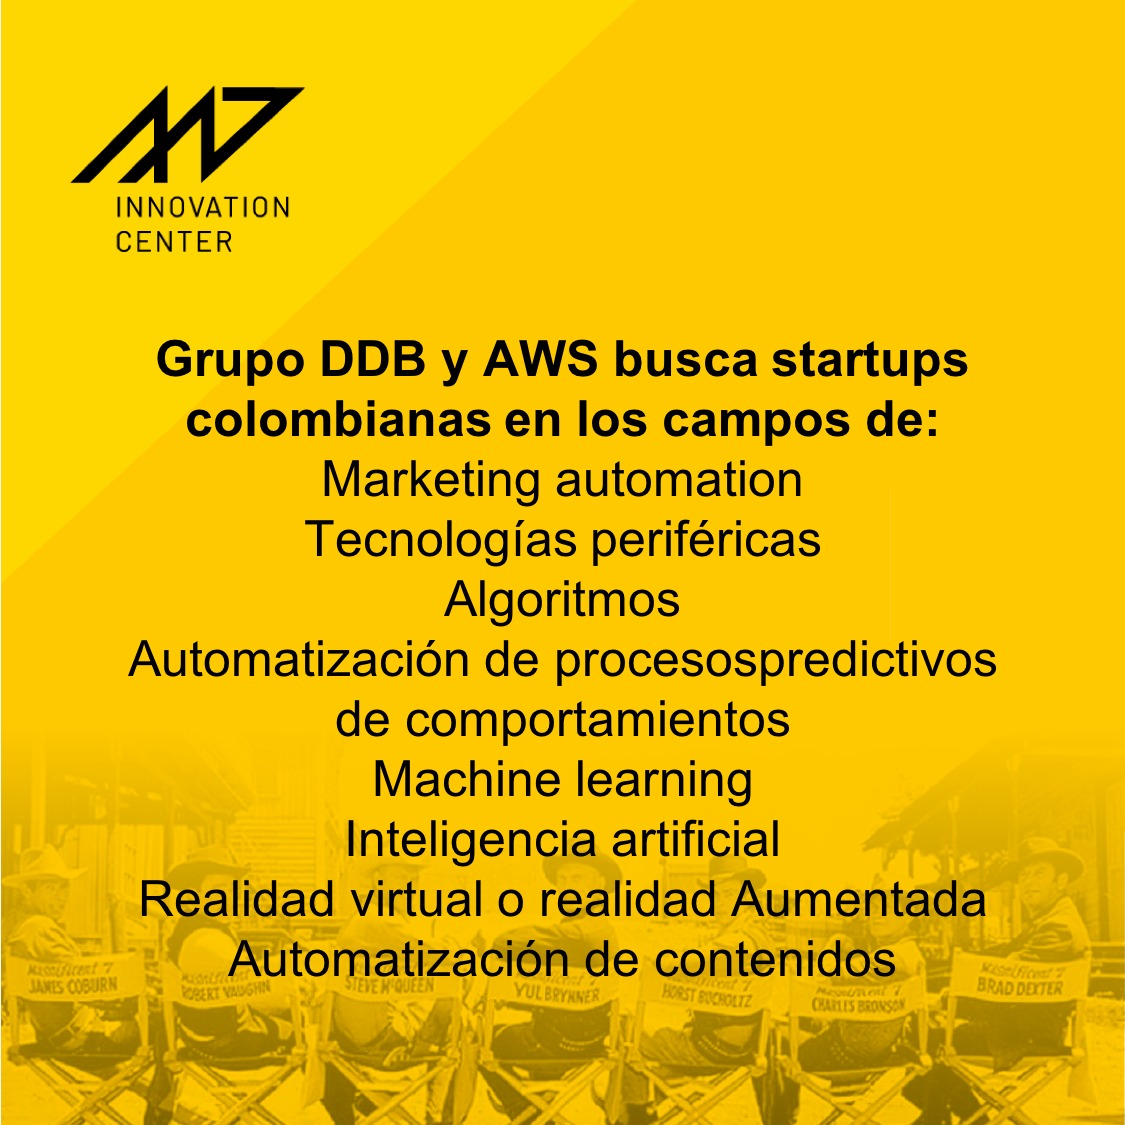 Grupo DDB -de la mano de Amazon- presenta M7 Innovation Center, un proyecto que busca 7 magníficas Startups colombianas